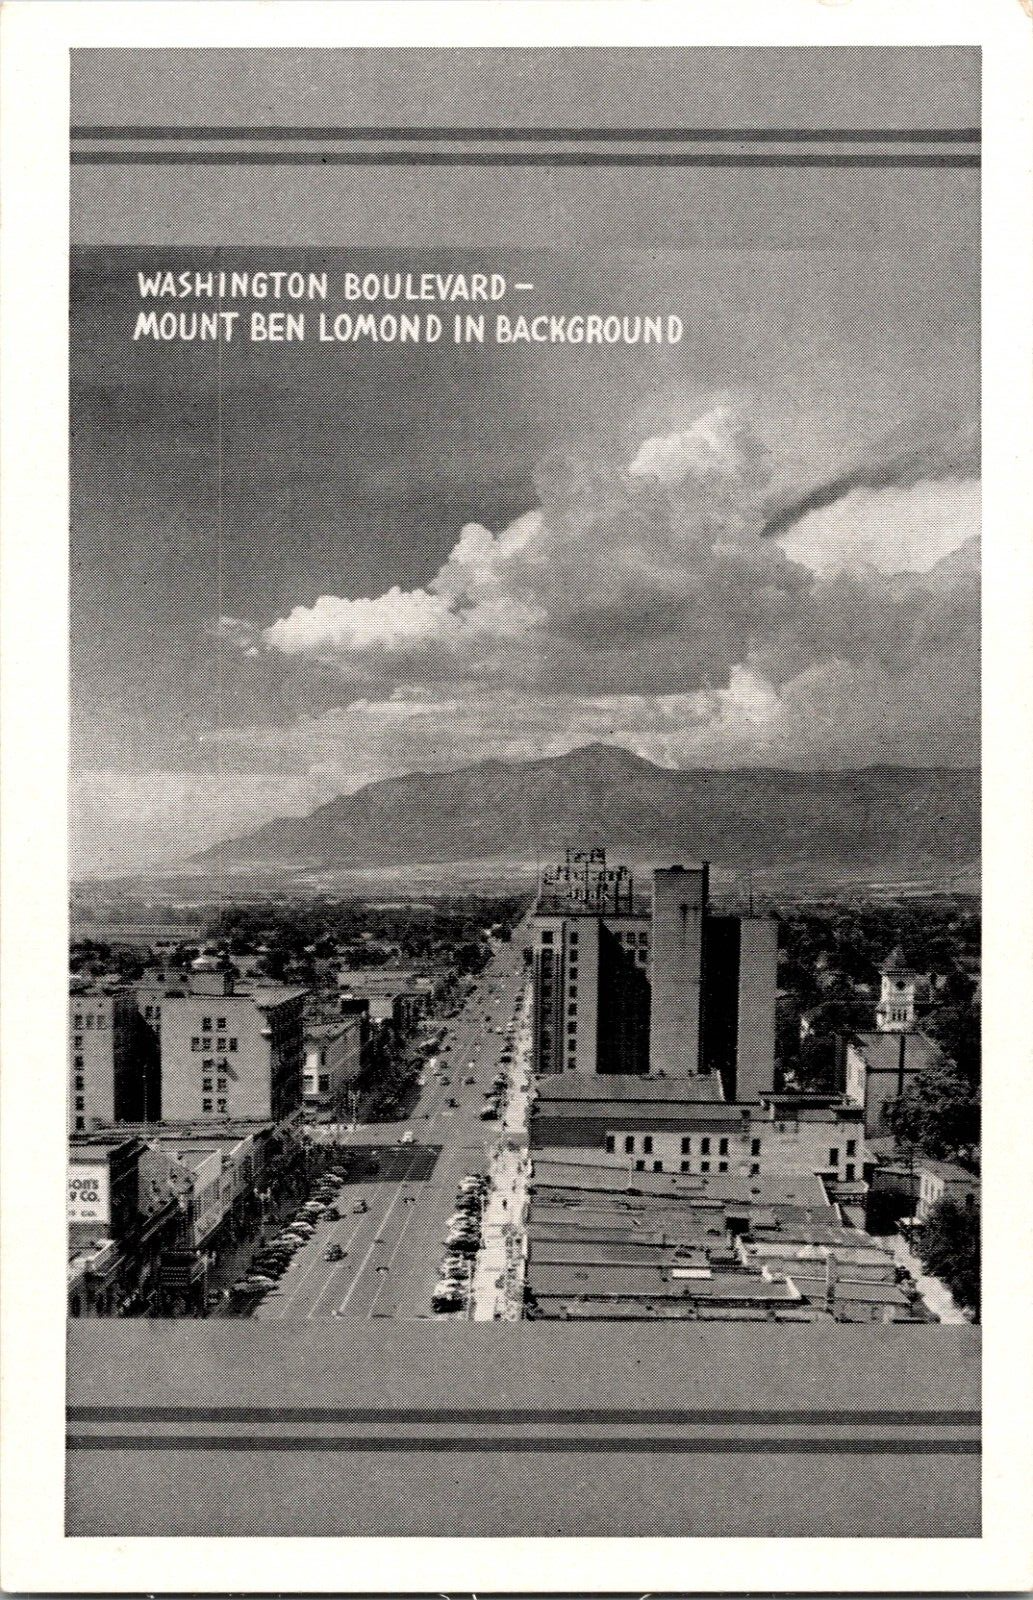 Primary image for Vtg Postcard Washington Boulevard - Mount Ben Lomond in Background, Ogden Utah